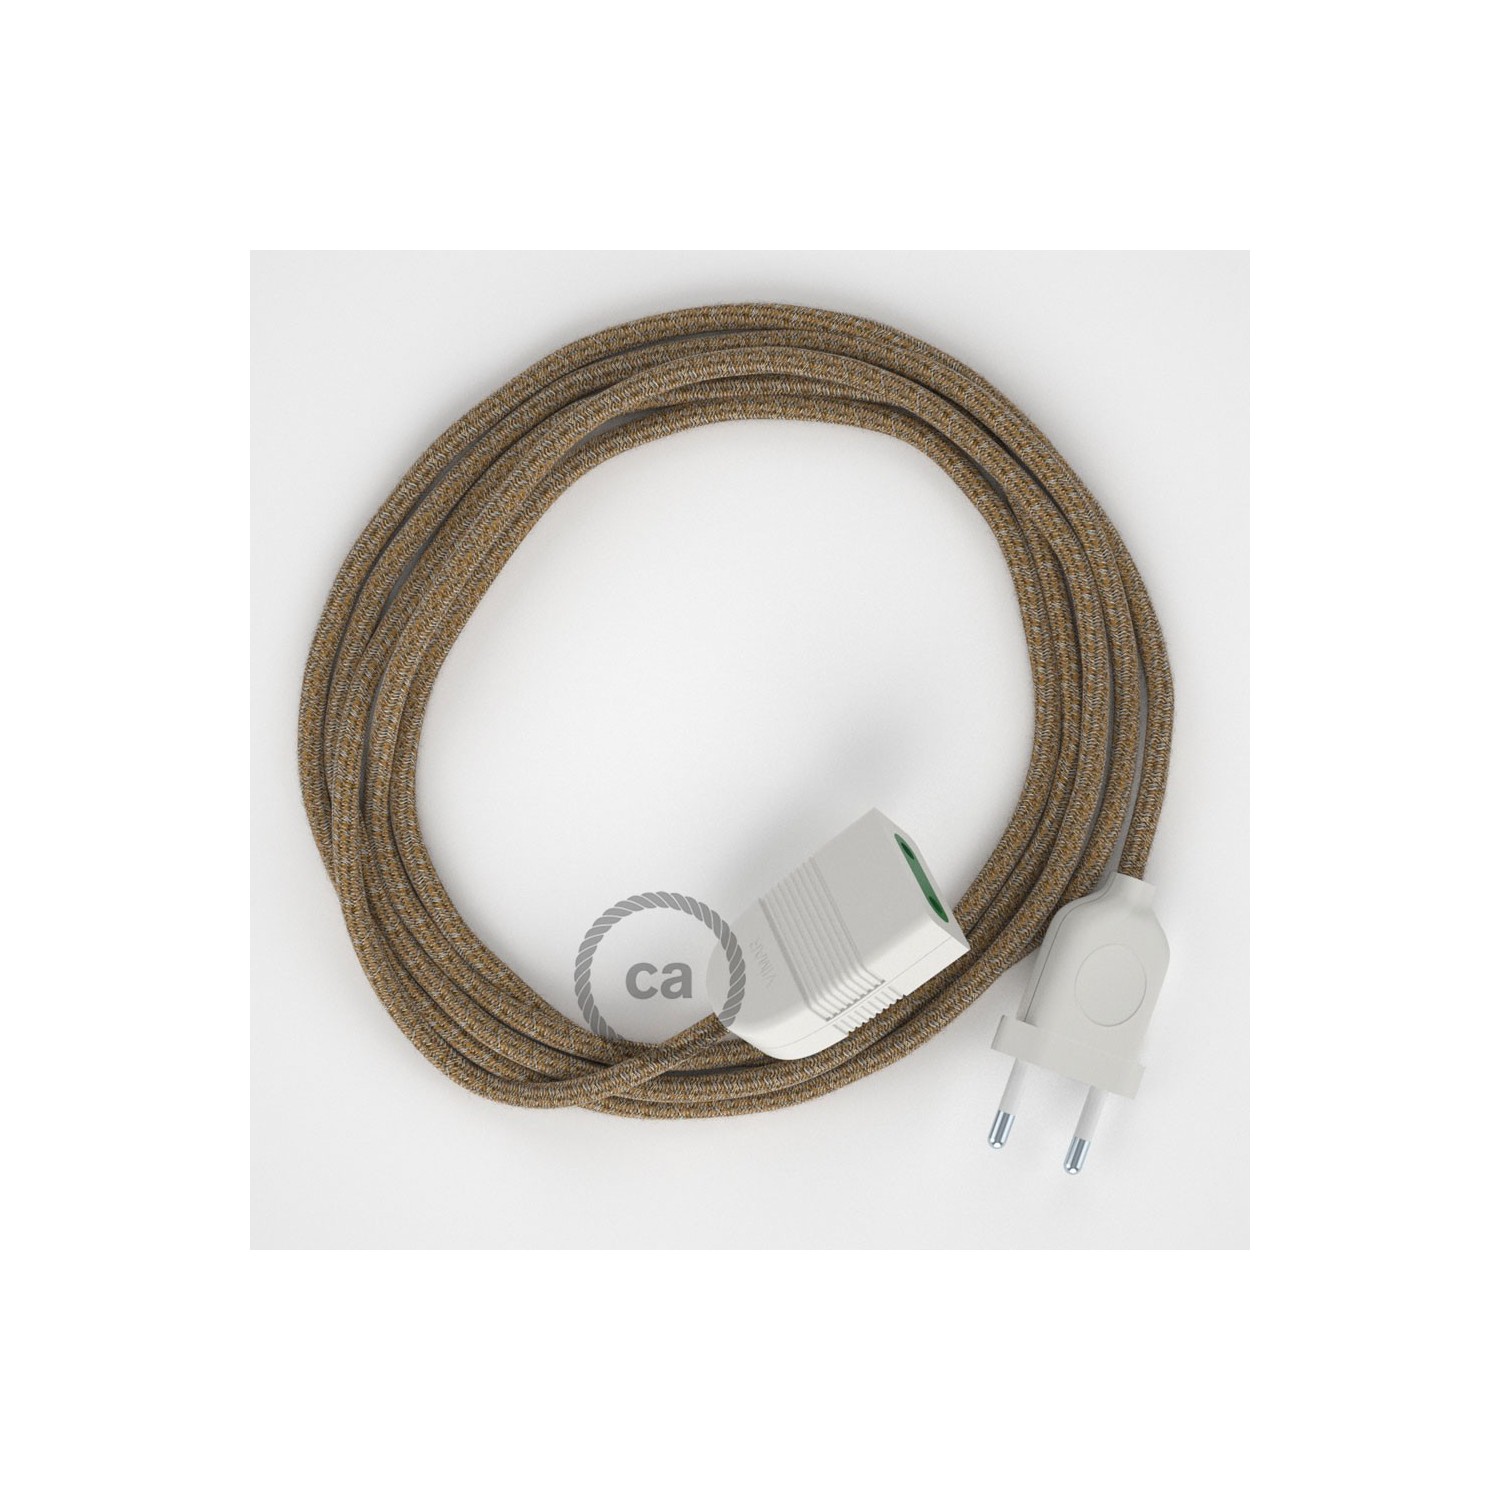 Produžni kabel za napajanje (2P 10A) Braon Pamuk i Prirodni Lan RS82 - Made in Italy